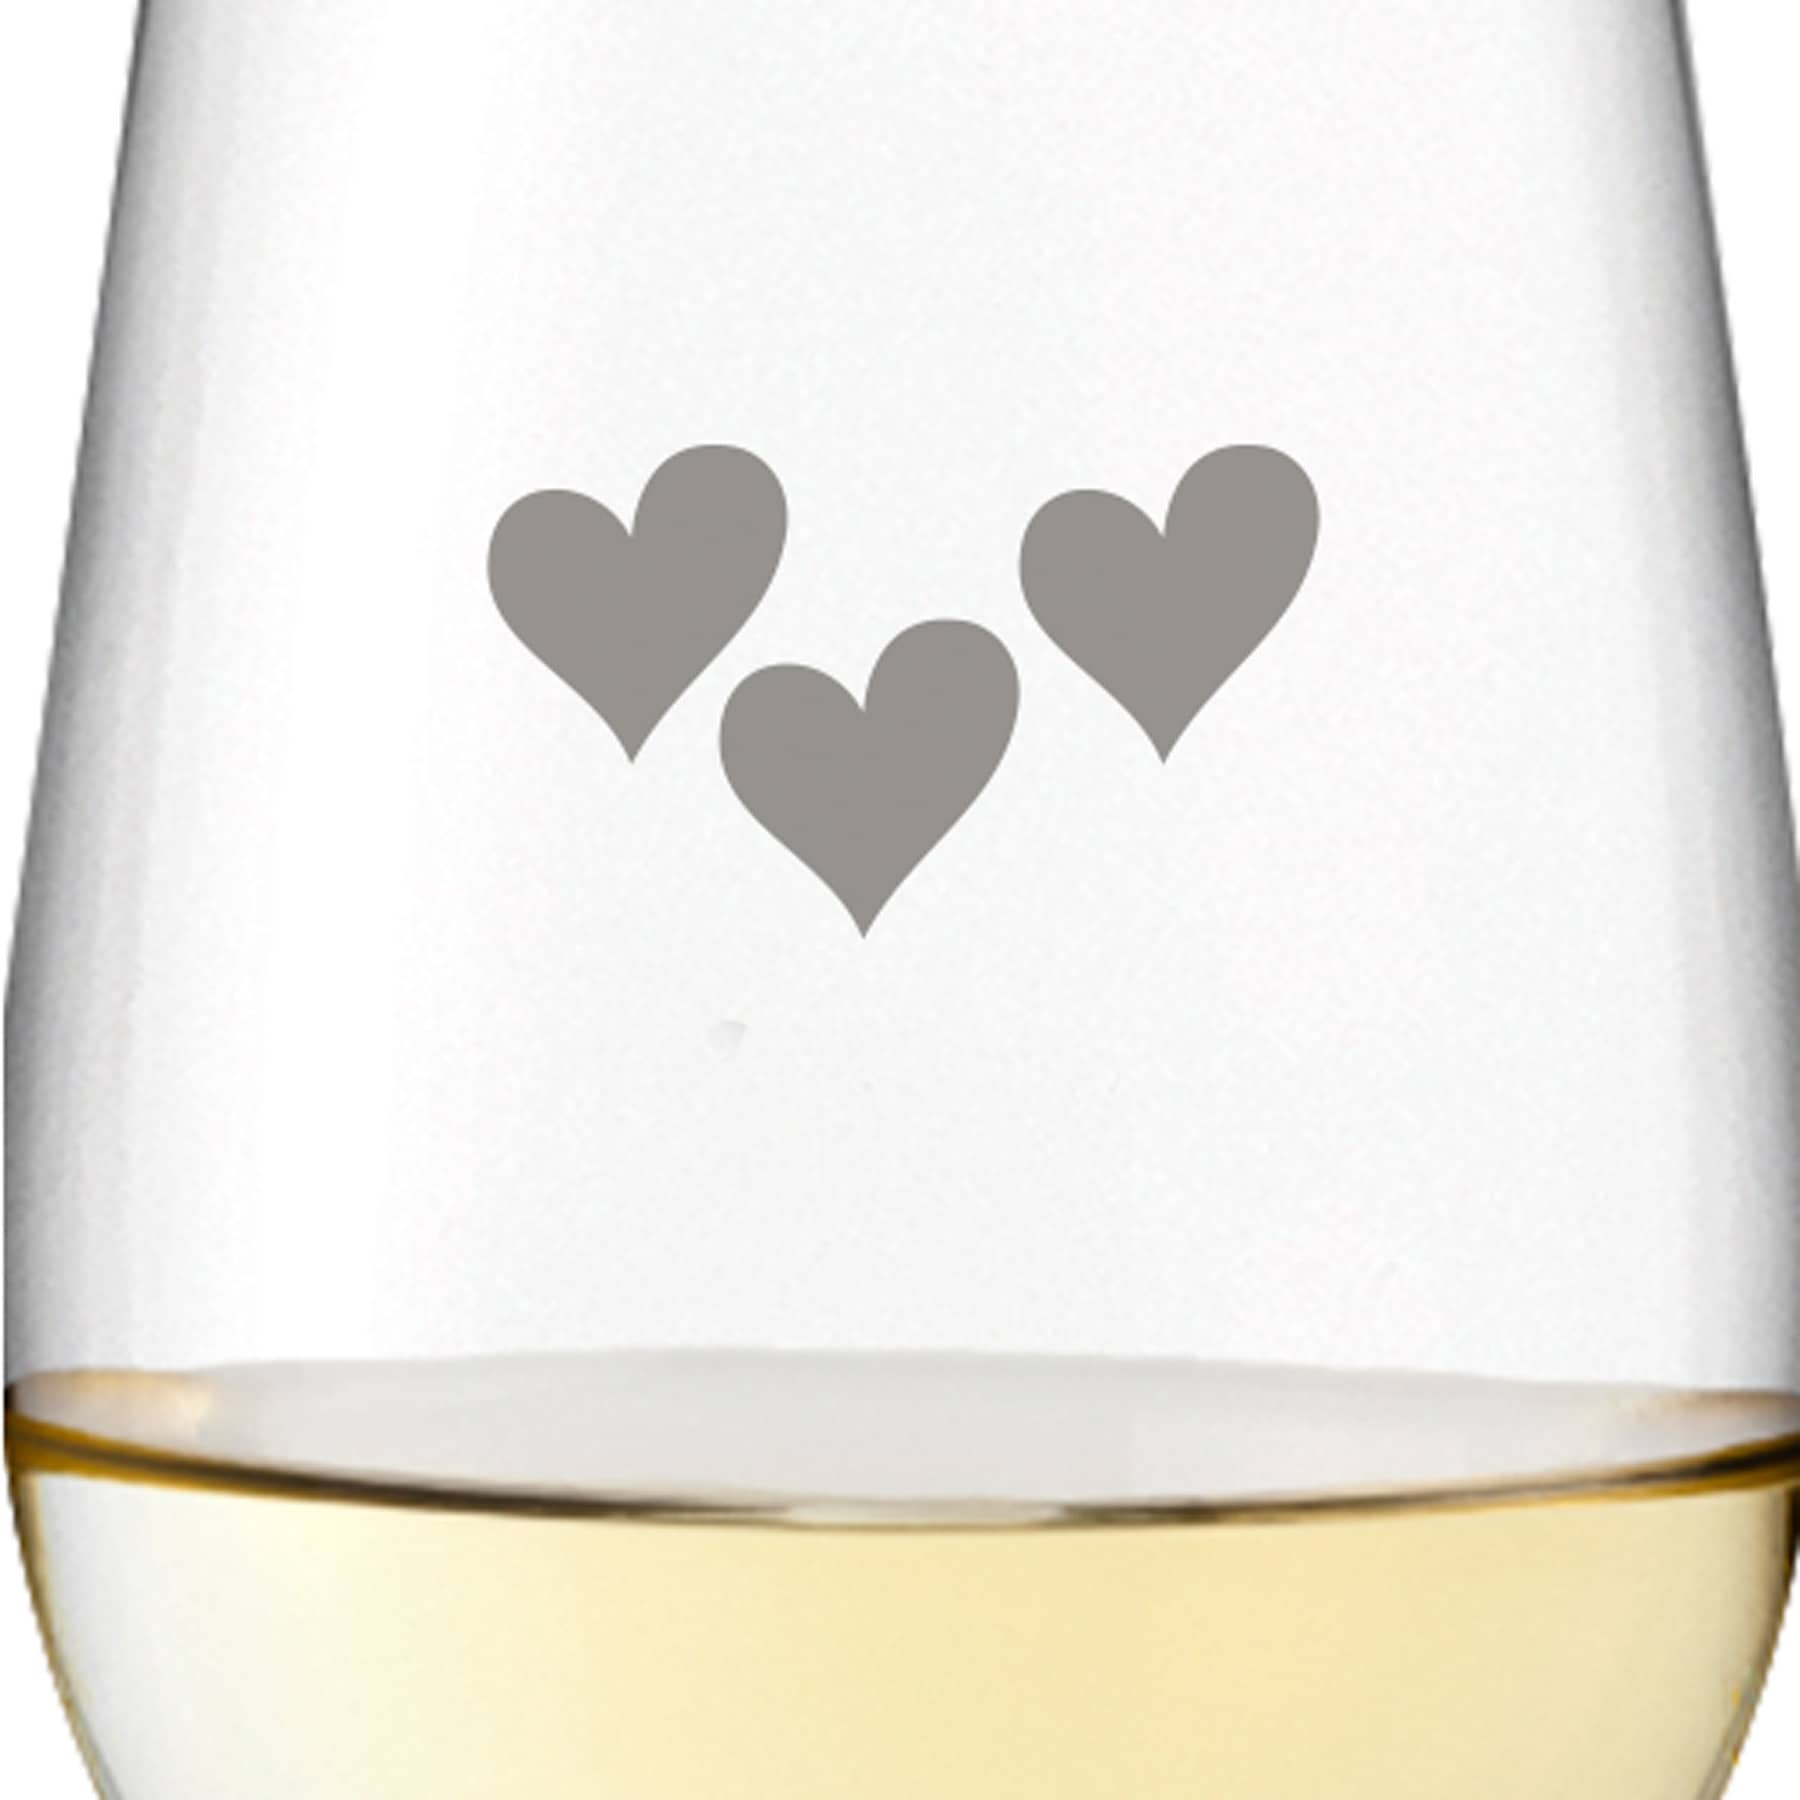 Leonardo Weißweinglas 300ml Ciao+ mit Motiv "3 Herzen" mit Name oder Wunschtext